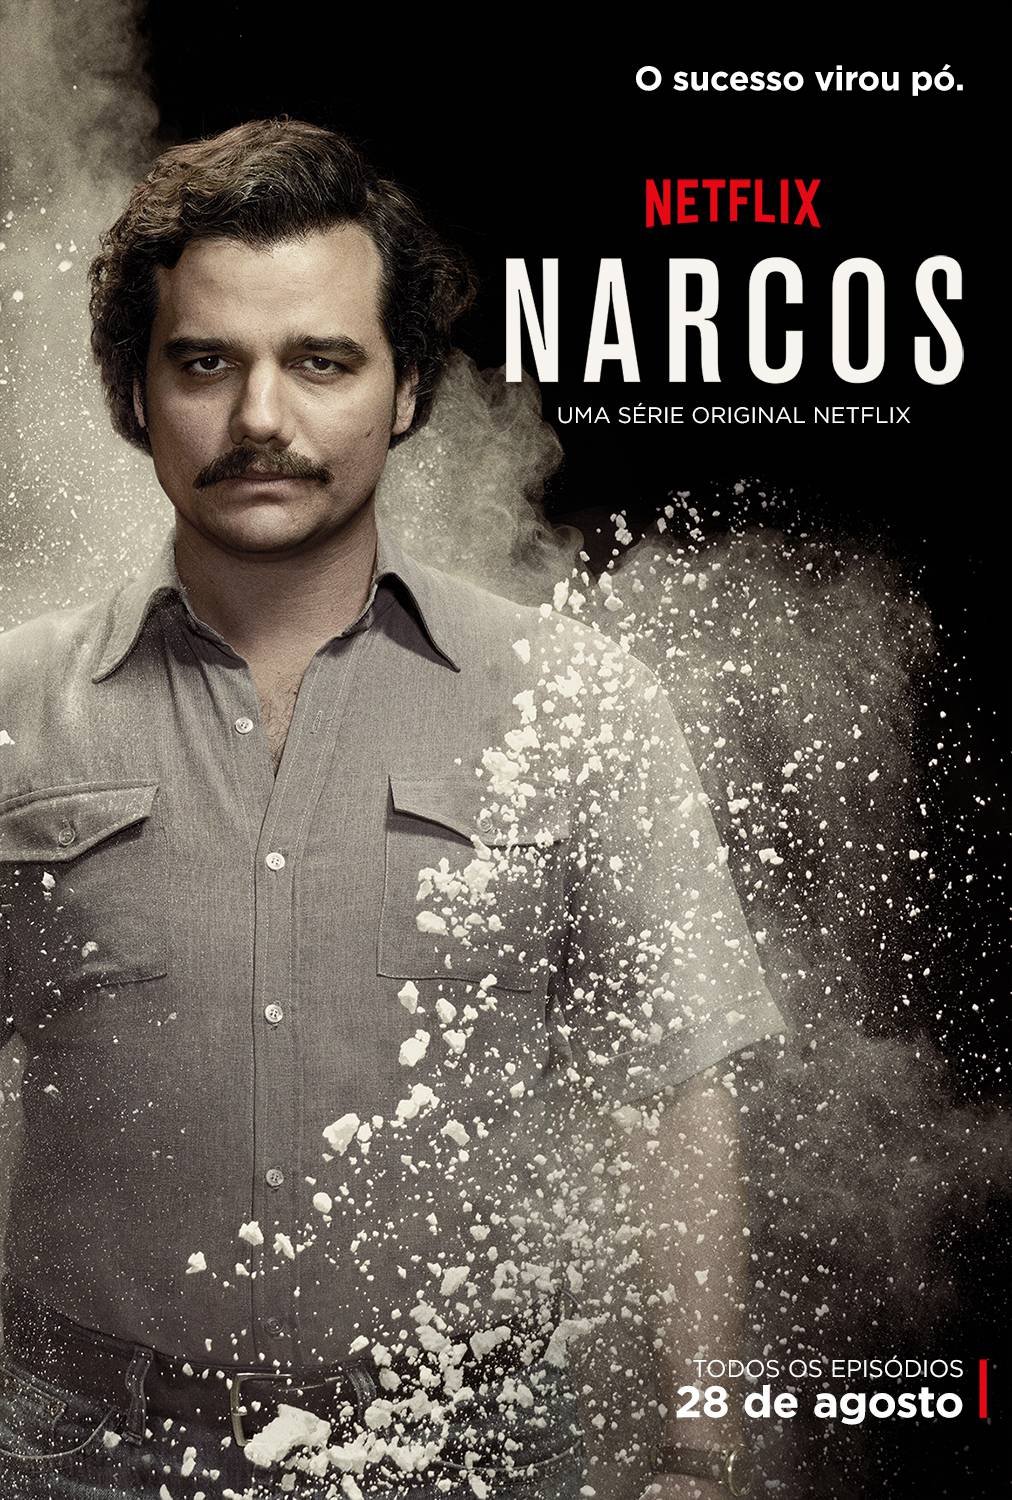 Narcos_Character-Pablo_BPO